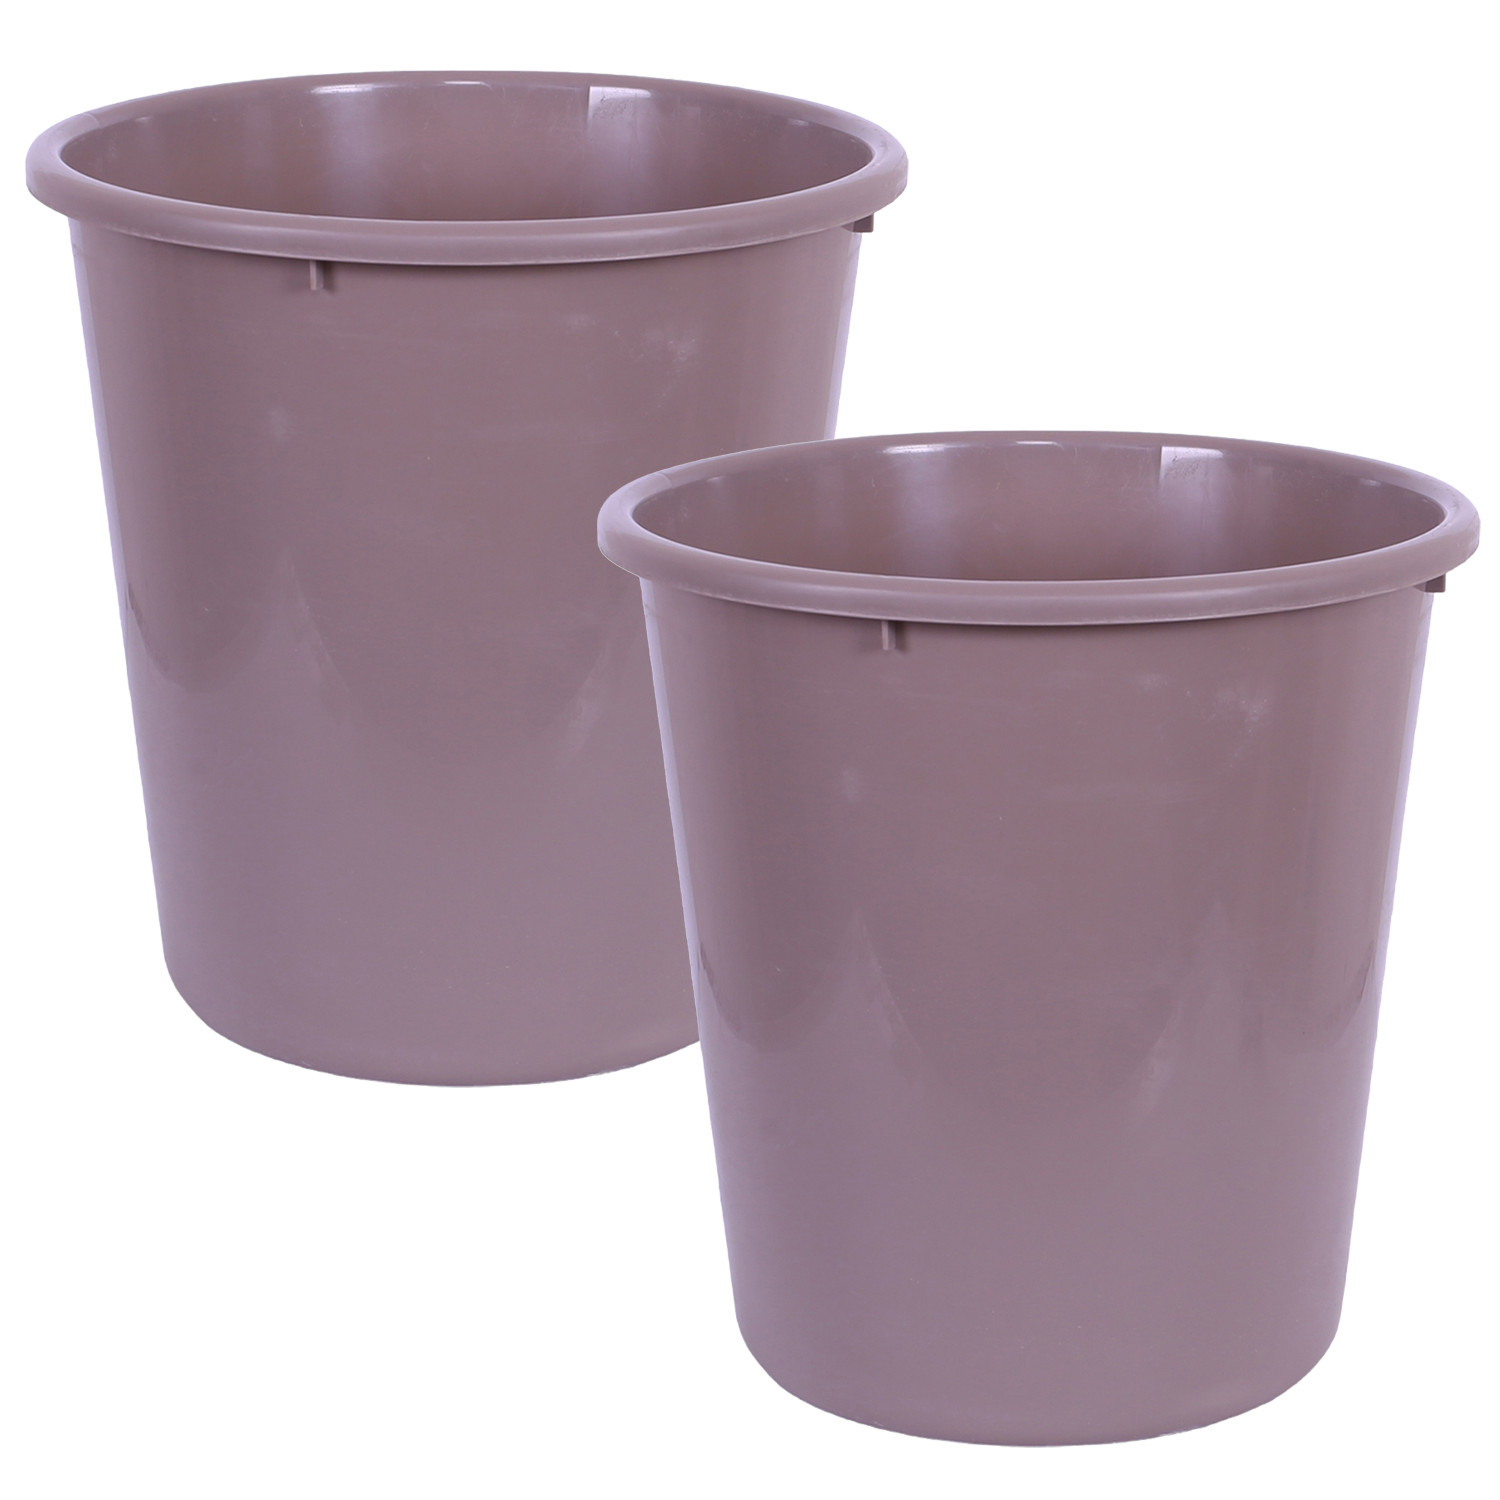 Kuber Industries Dustbin | Open Dustbin | Plastic Garbage Dustbin | Dustbin For Kitchen | Dustbin For Bathroom | Office Dustbin | Plain Sada Dustbin | 7 LTR | 066 | Brown